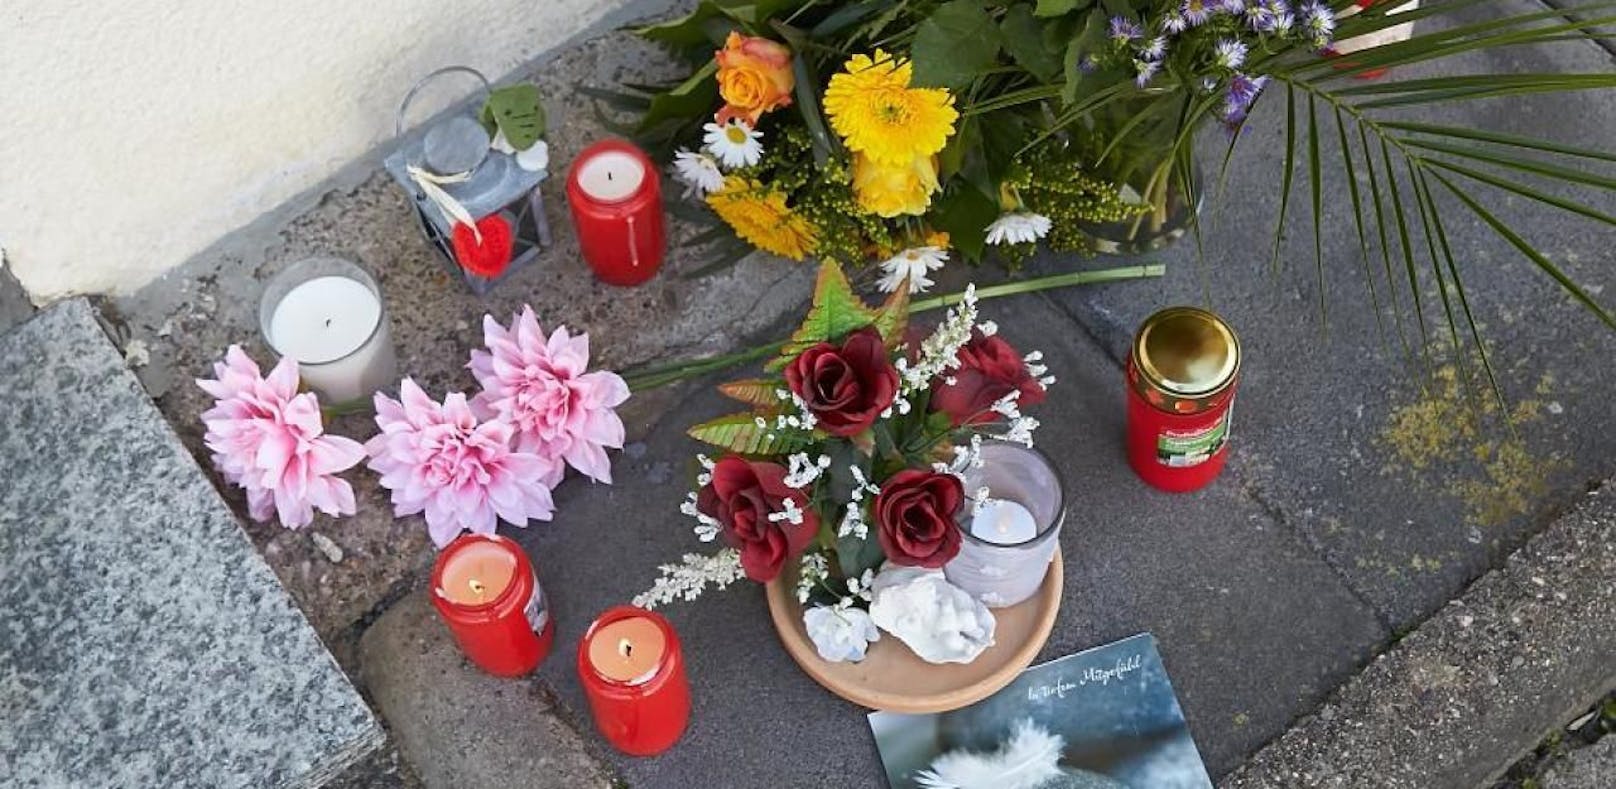 Vor dem Kindergarten in Bad Breisig wurden Blumen und Kerzen abgelegt